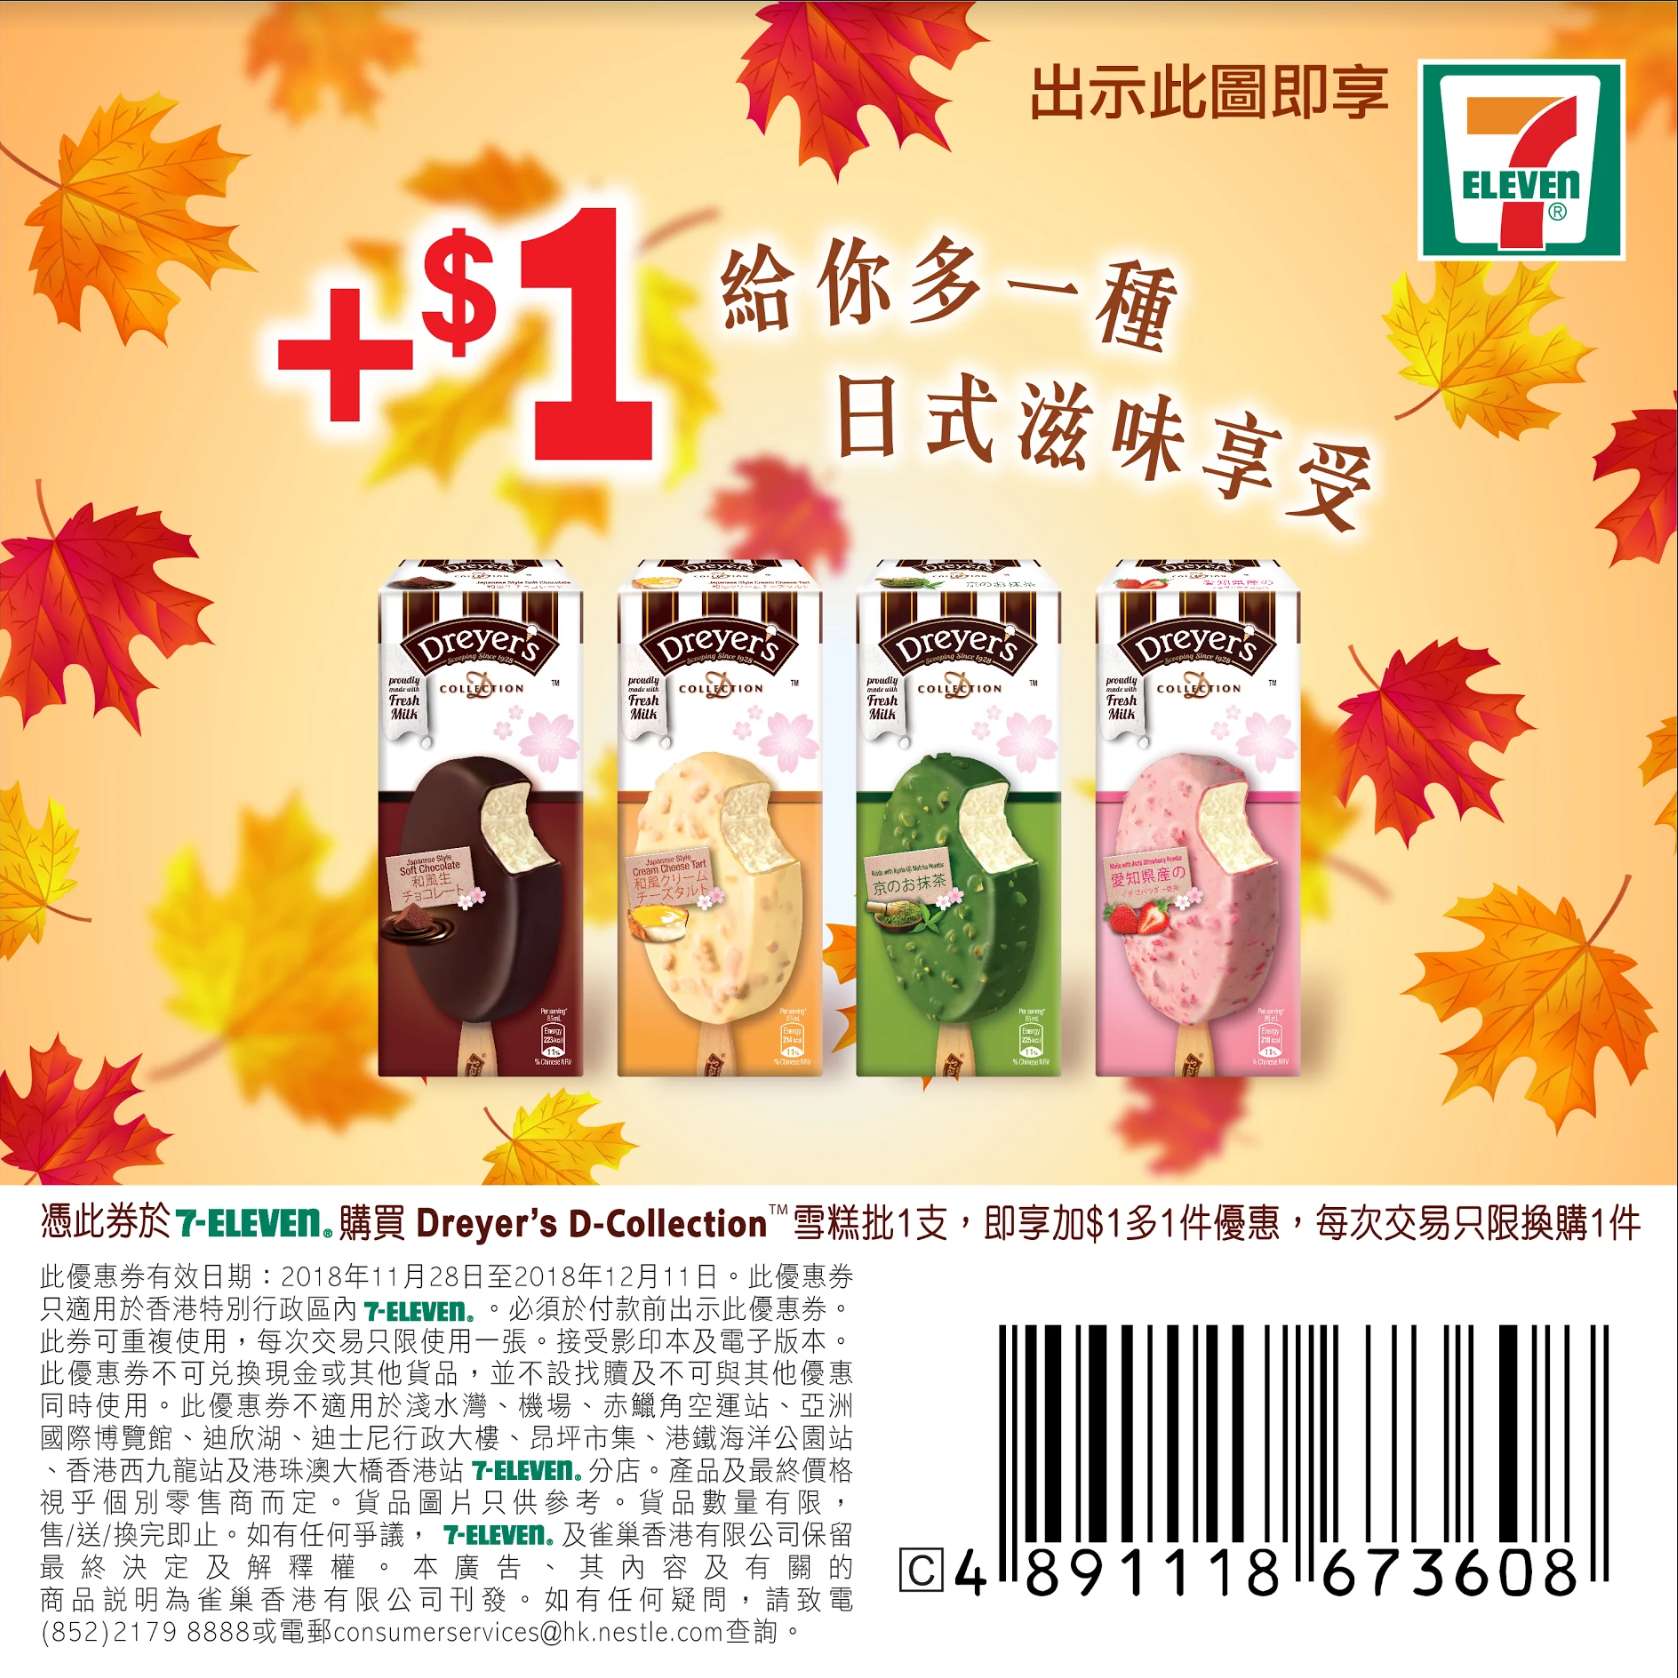 DREYER’S 日本系列雪糕加多1支優惠@7-Eleven(至18年12月11日)圖片1